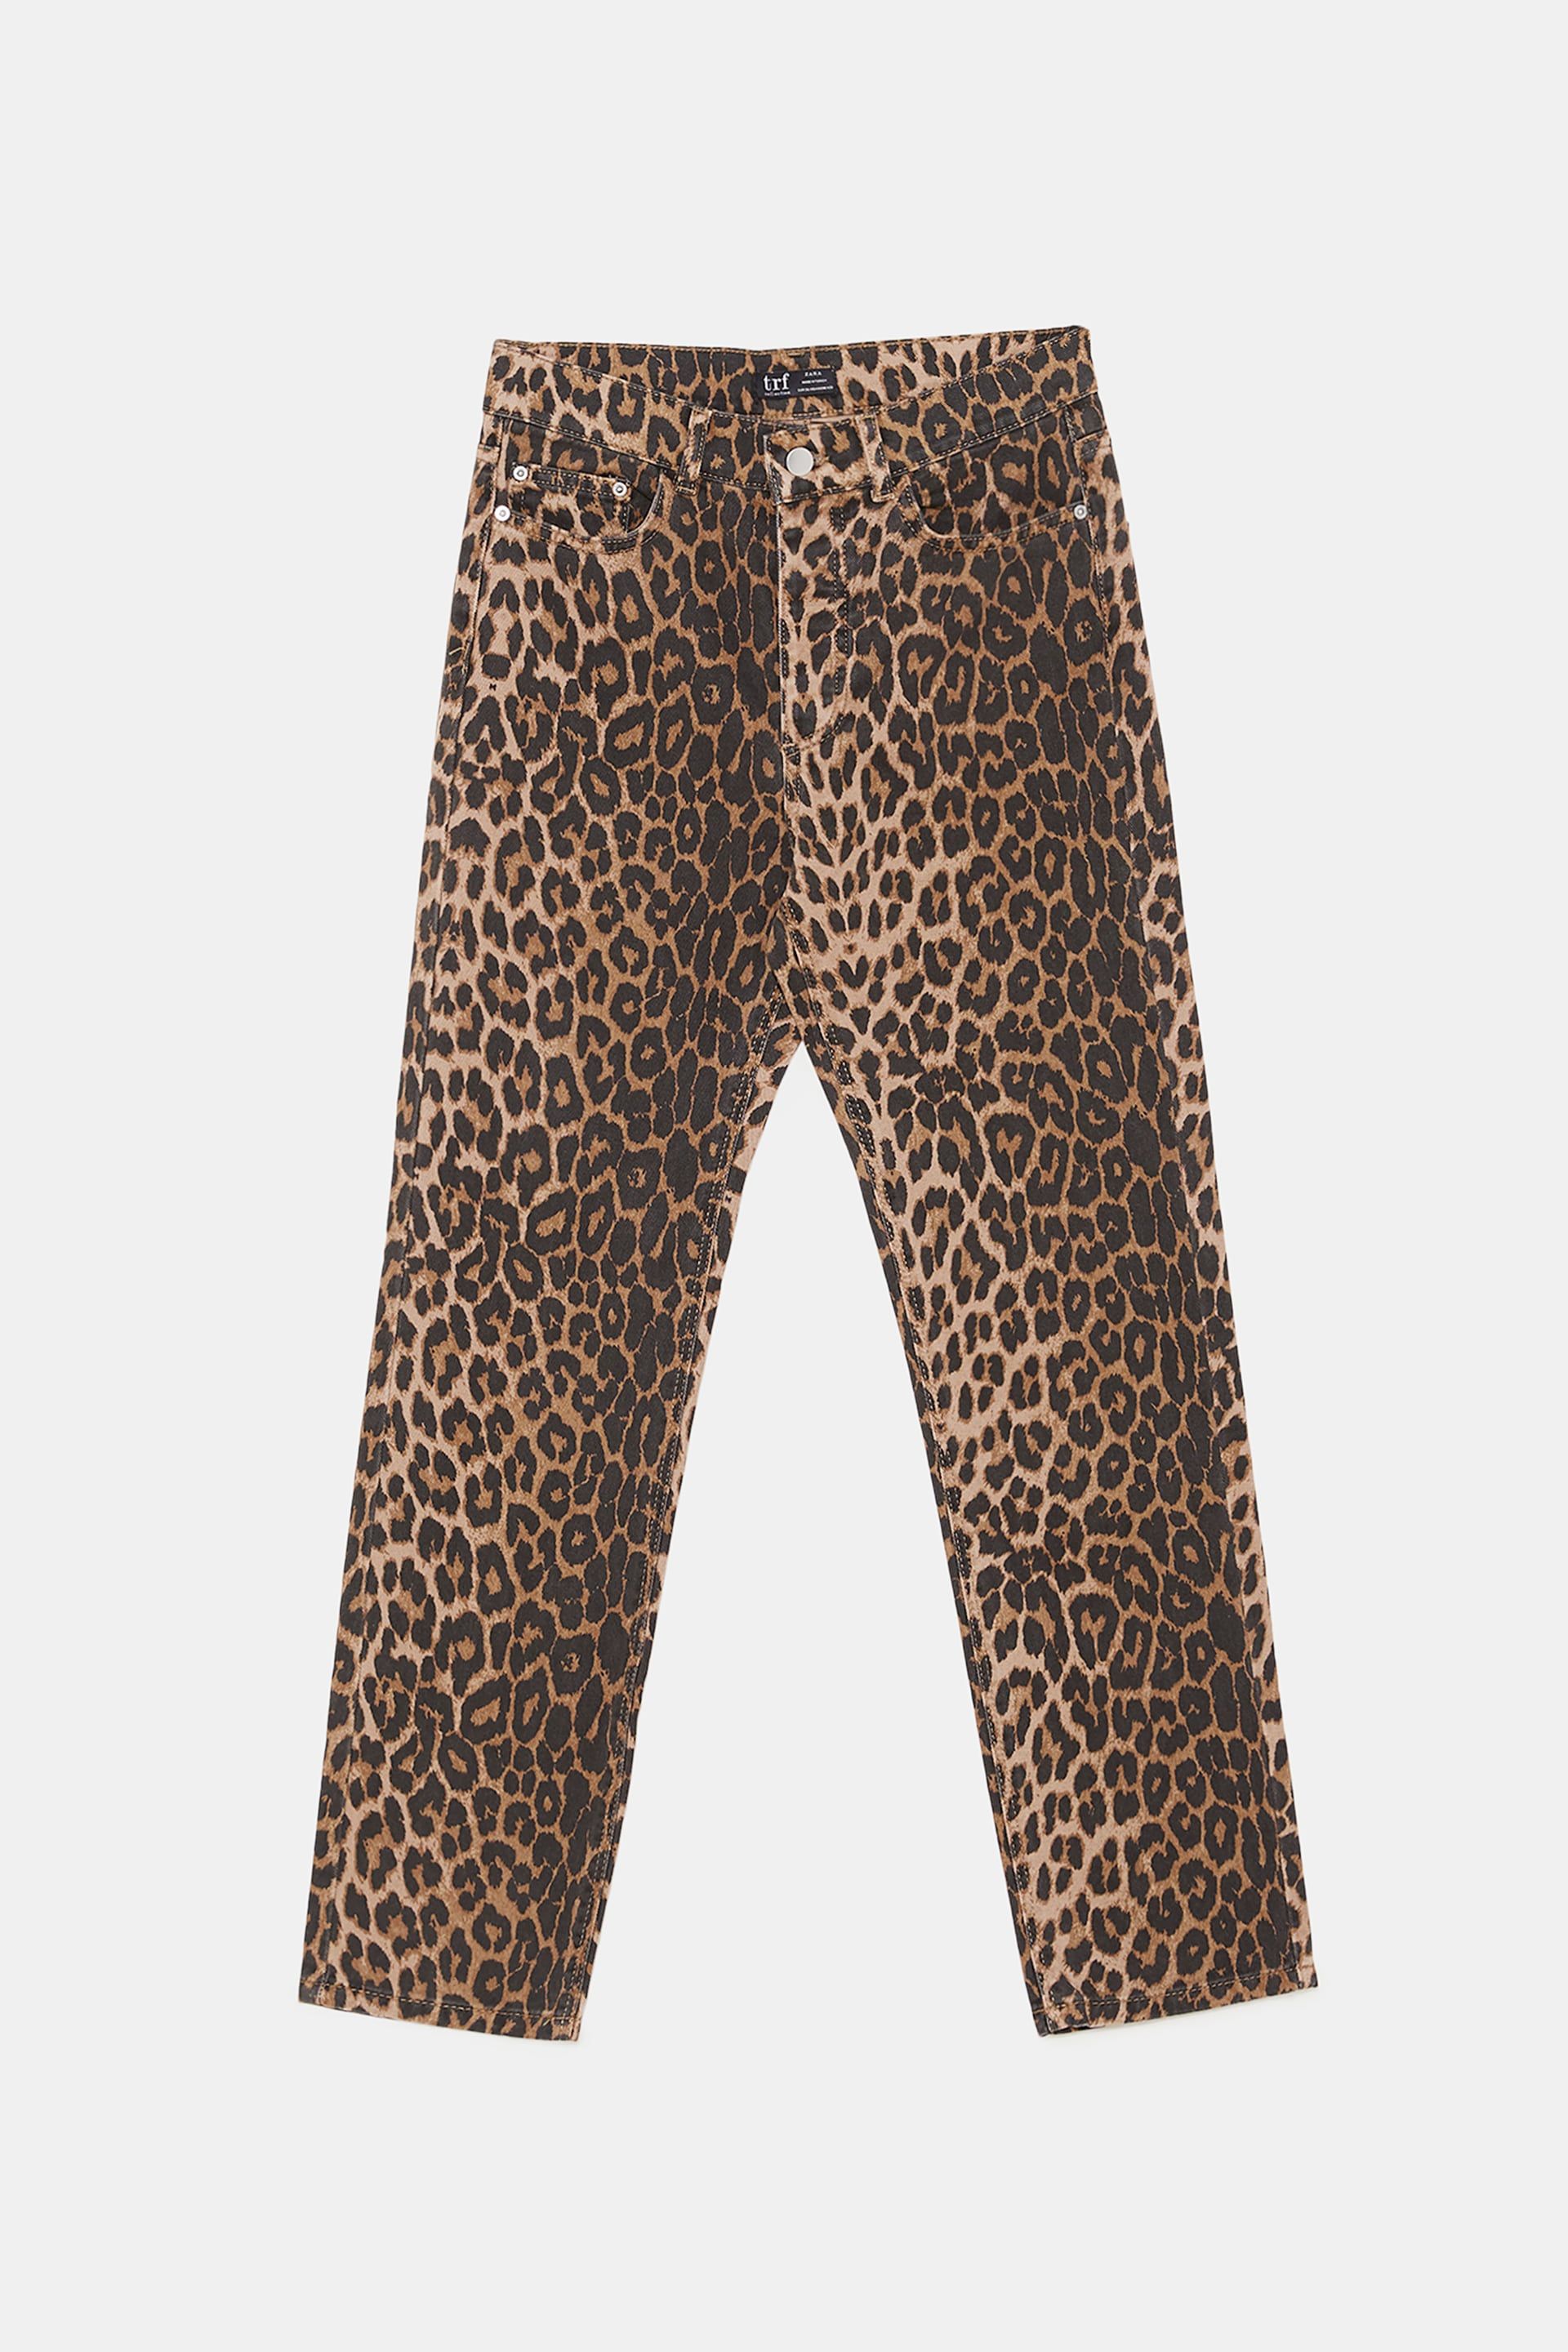 Pantalones leopardo Zara - Estos pantalones son los más de Zara